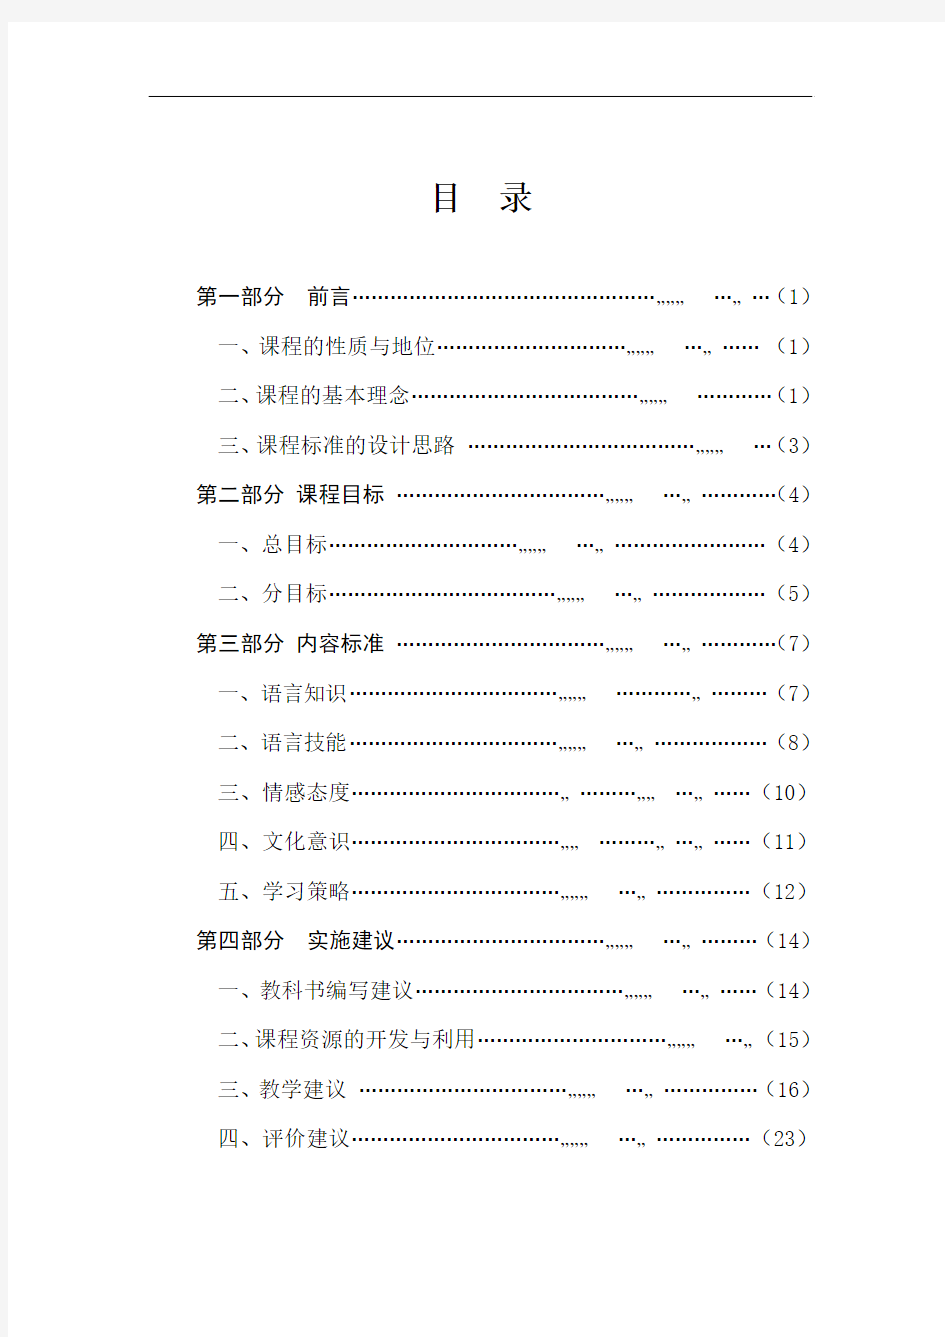 民族中小学汉语课程标准(九年义务教育)(征求意见稿)